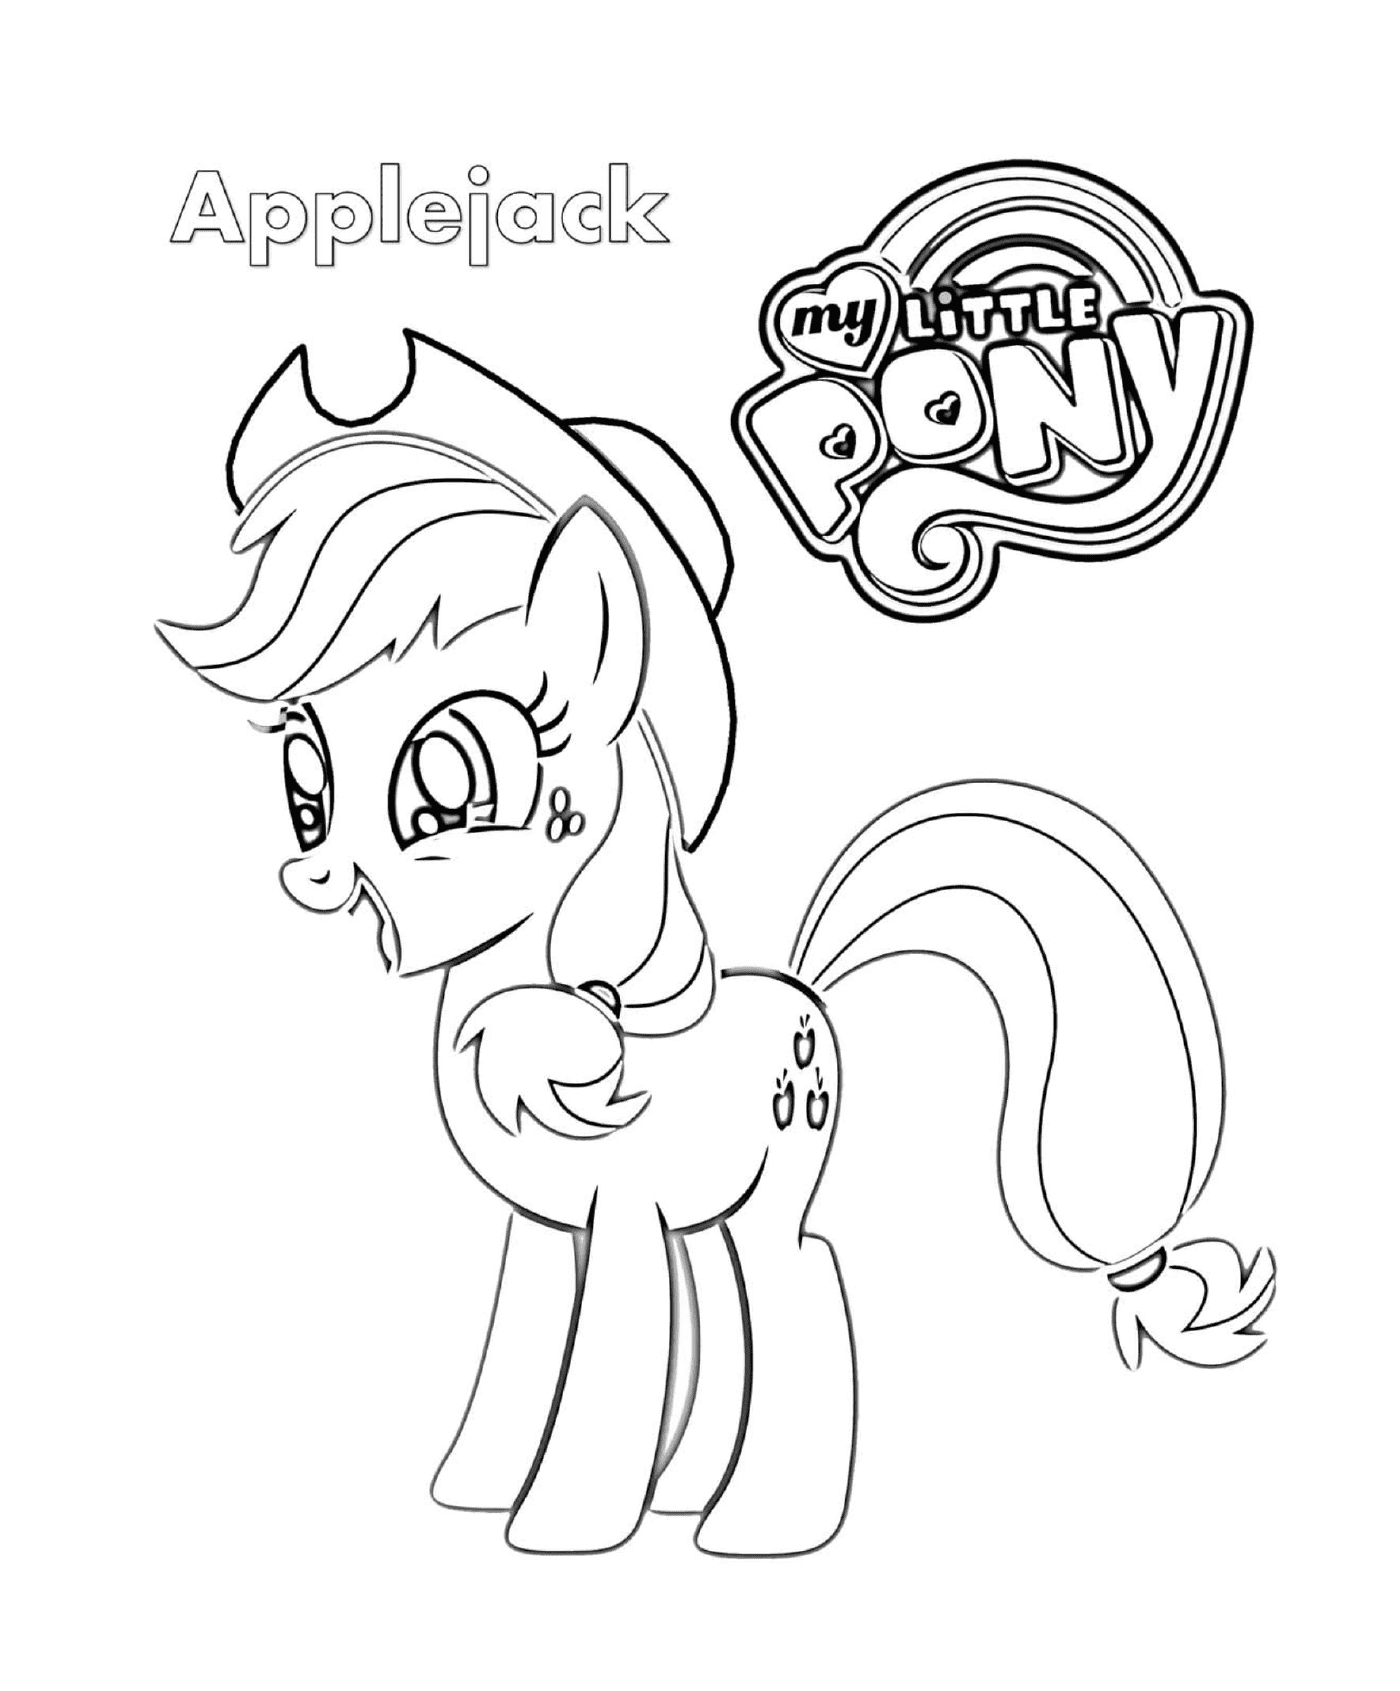  Applejack, ein süßes Pony 